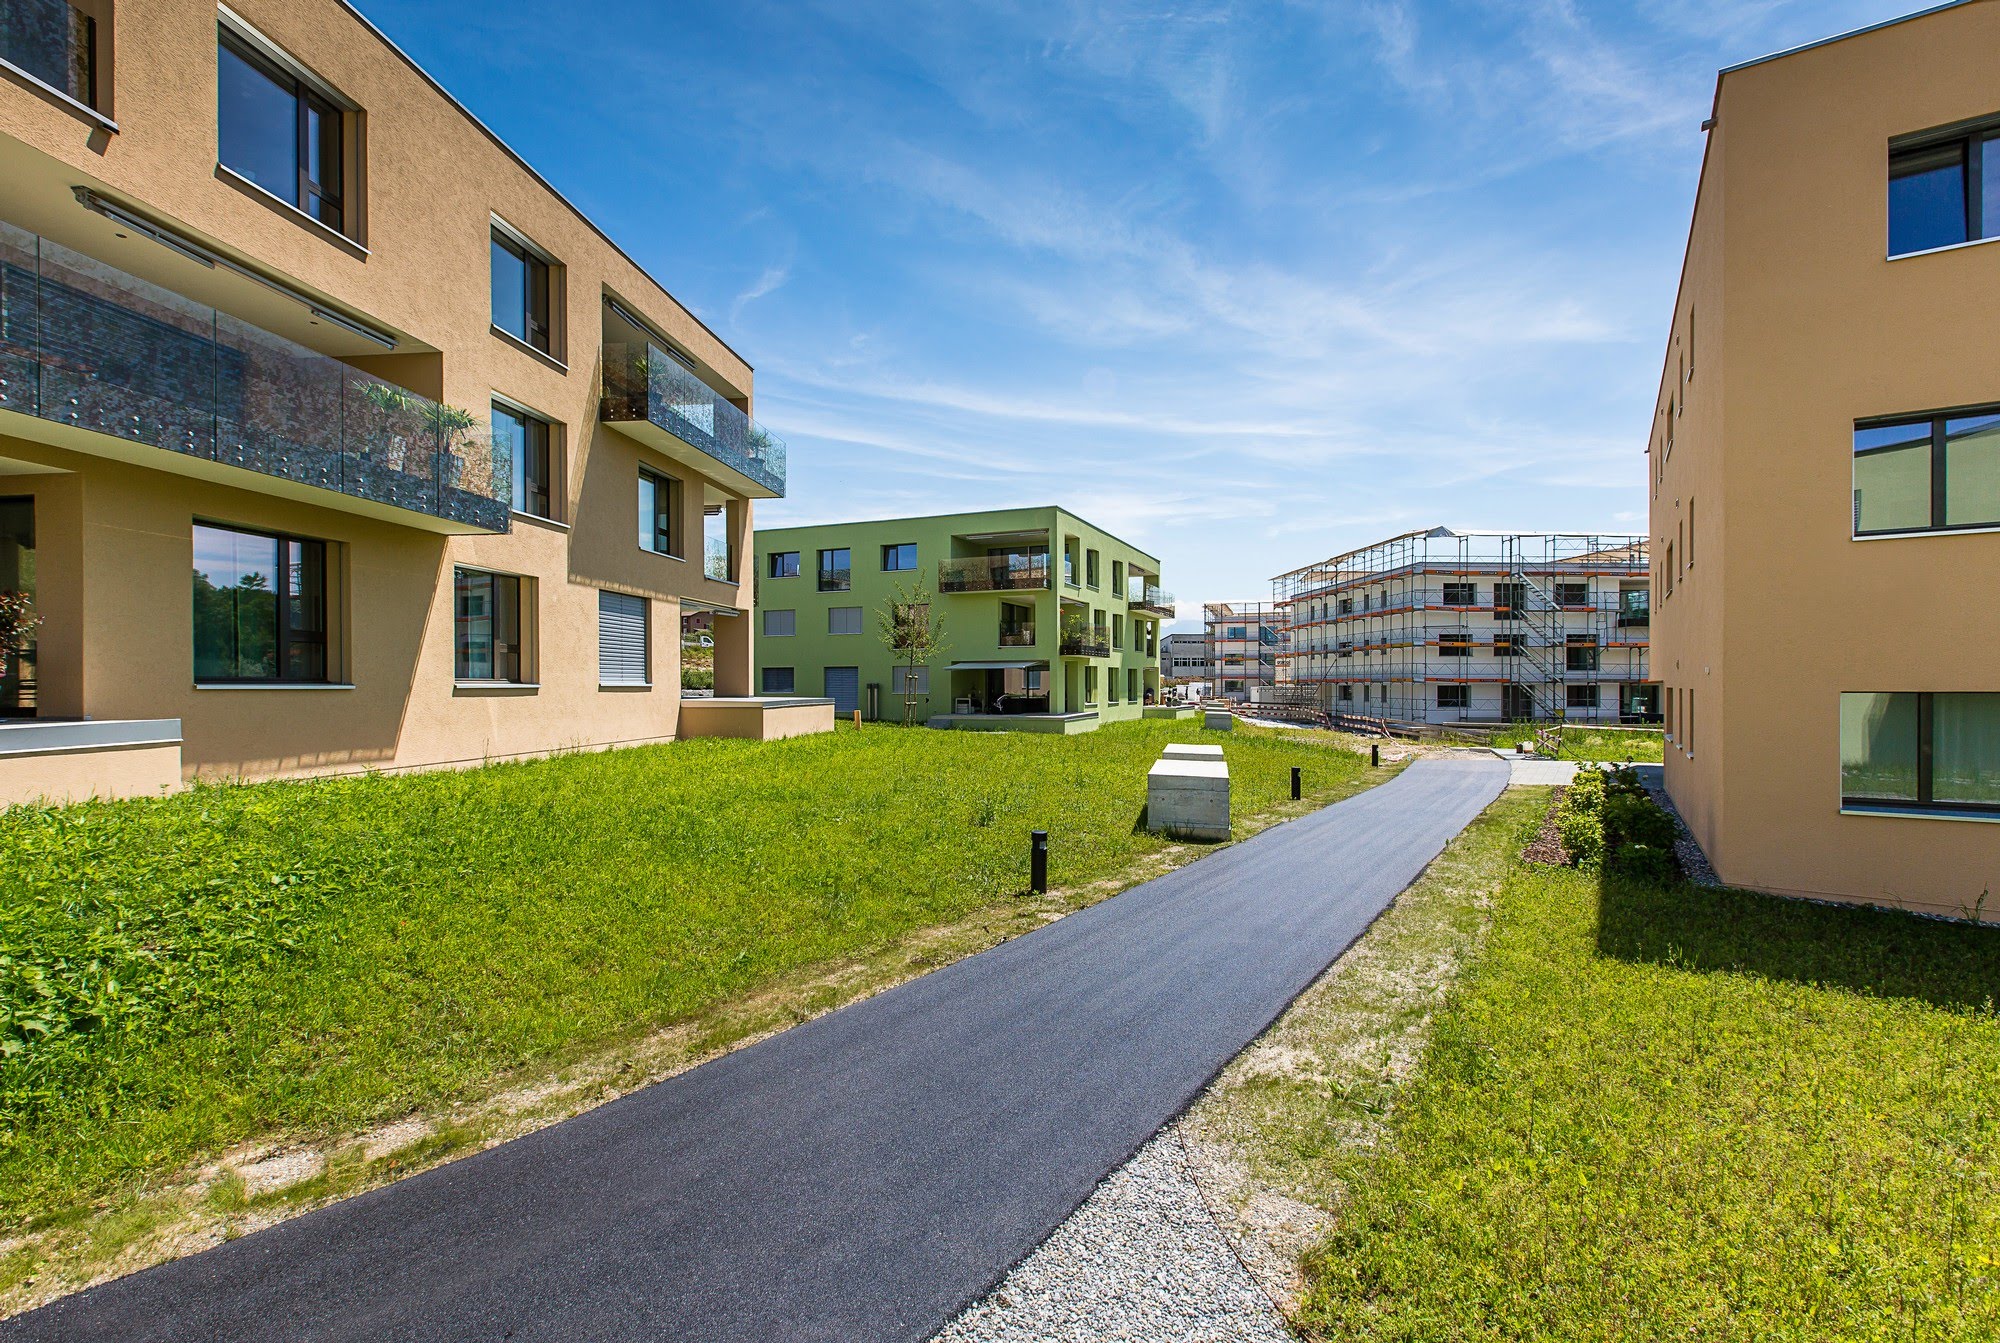 Wohnen MFH 13 MFH in Oberkirch Architektur,Wohnungsbau,Wohnhäuser,Einfamilienhäuser,Mehrfamilienhäuser